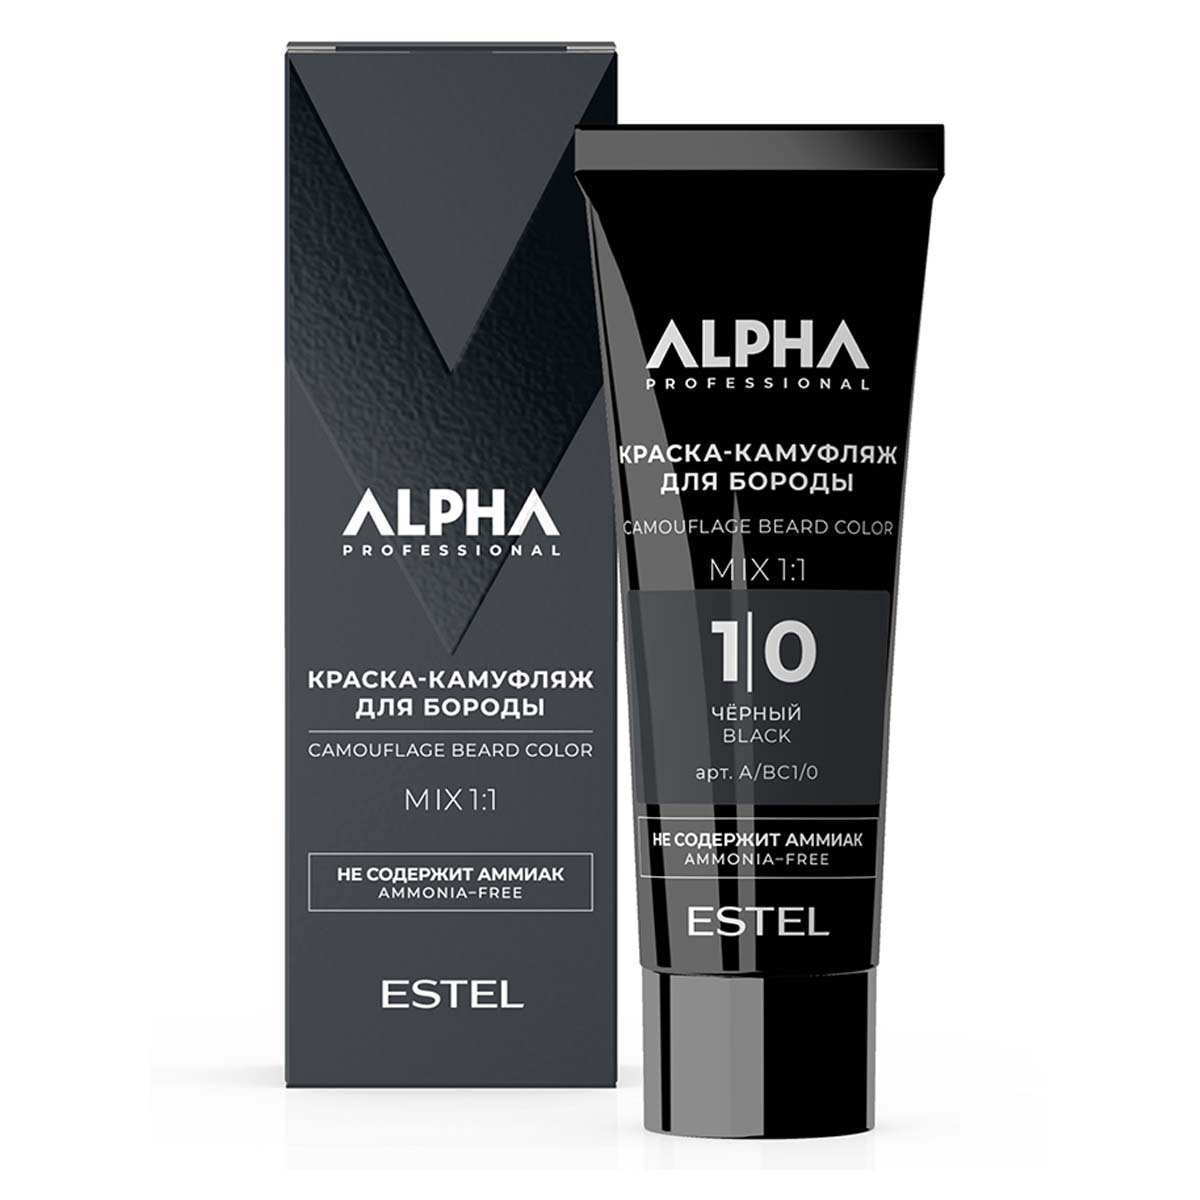 Крем-камуфляж ALPHA HOMME для окрашивания бороды ESTEL PROFESSIONAL 1/0 черный 40 мл краска камуфляж для бороды alpha homme ah k1 1 0 40 мл